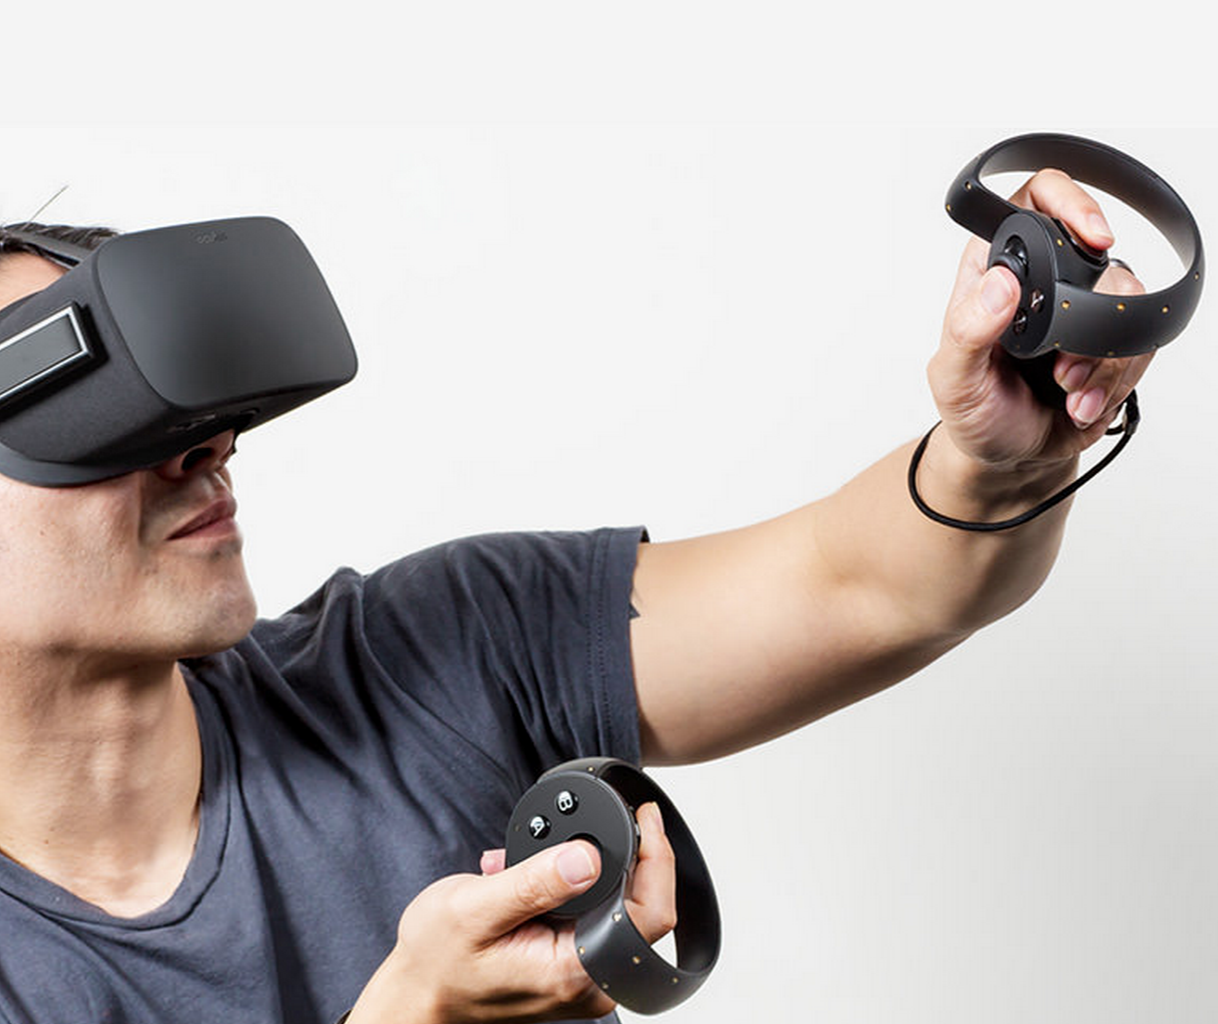 O vr. Очки виртуальной реальности Oculus Rift. VR шлем Oculus. VR Oculus Rift 2. ВР очки Окулус.